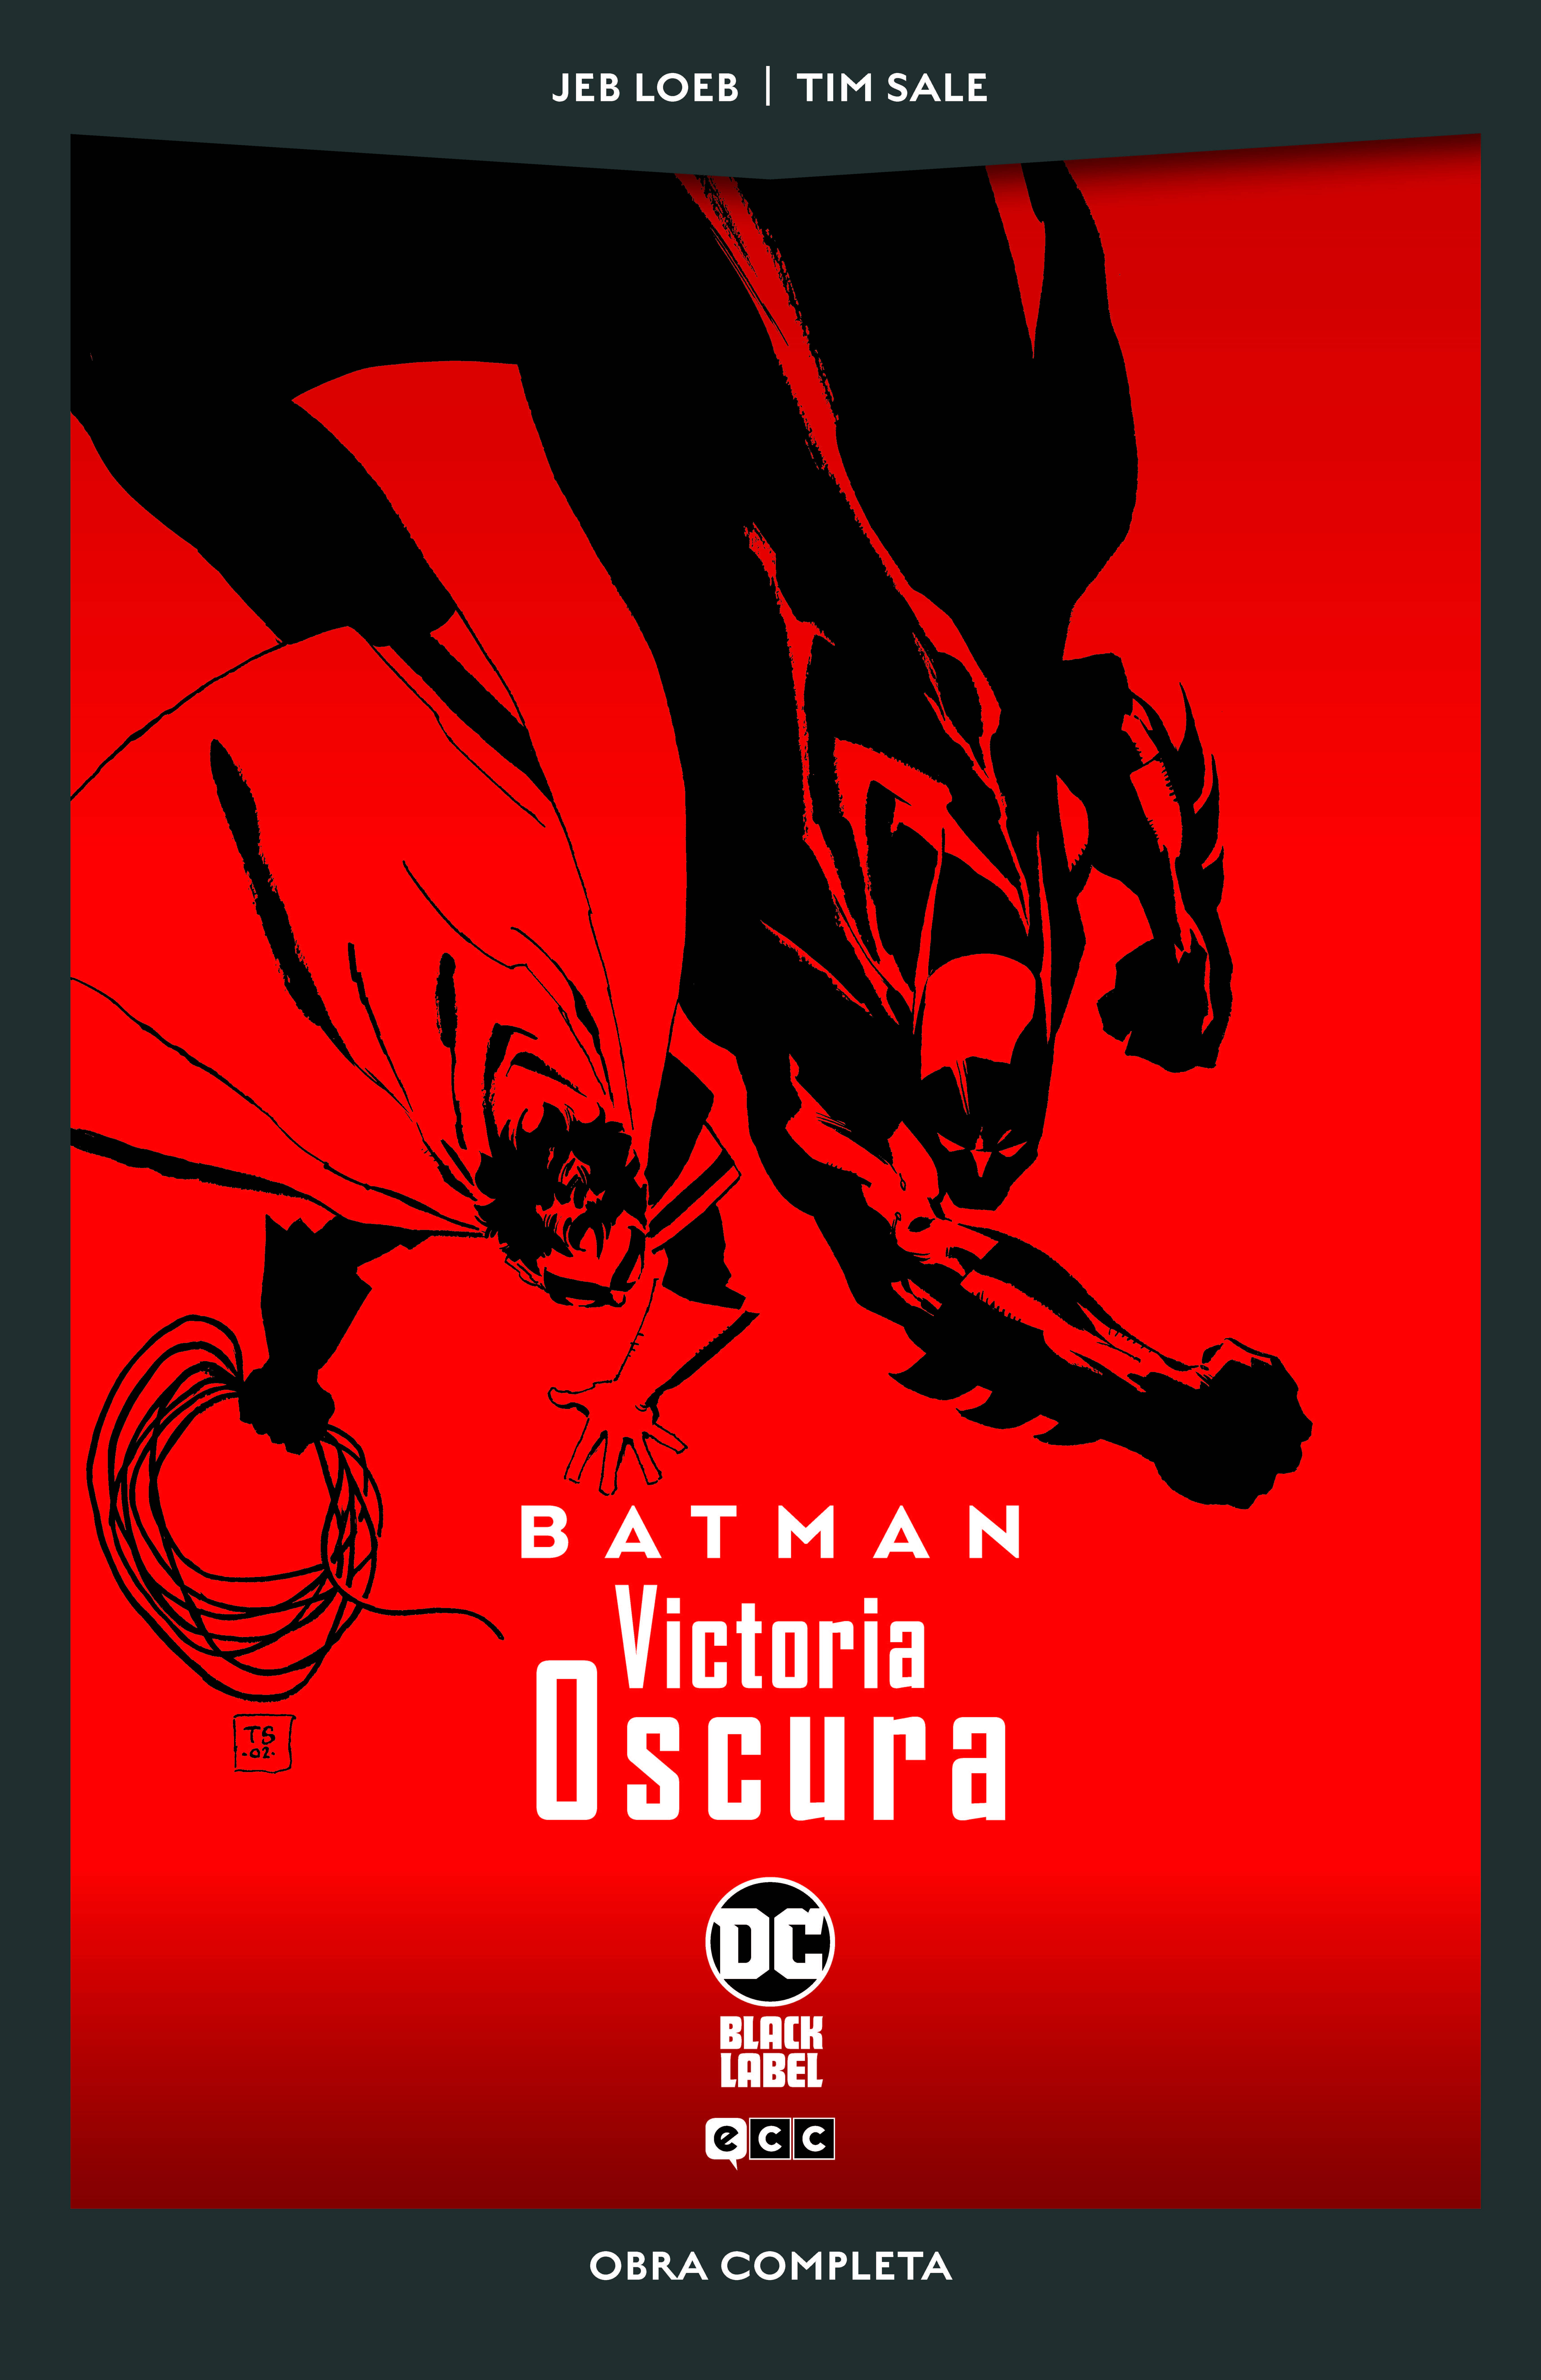 BATMAN: VICTORIA OSCURA (DC BLACK LABEL POCKET)